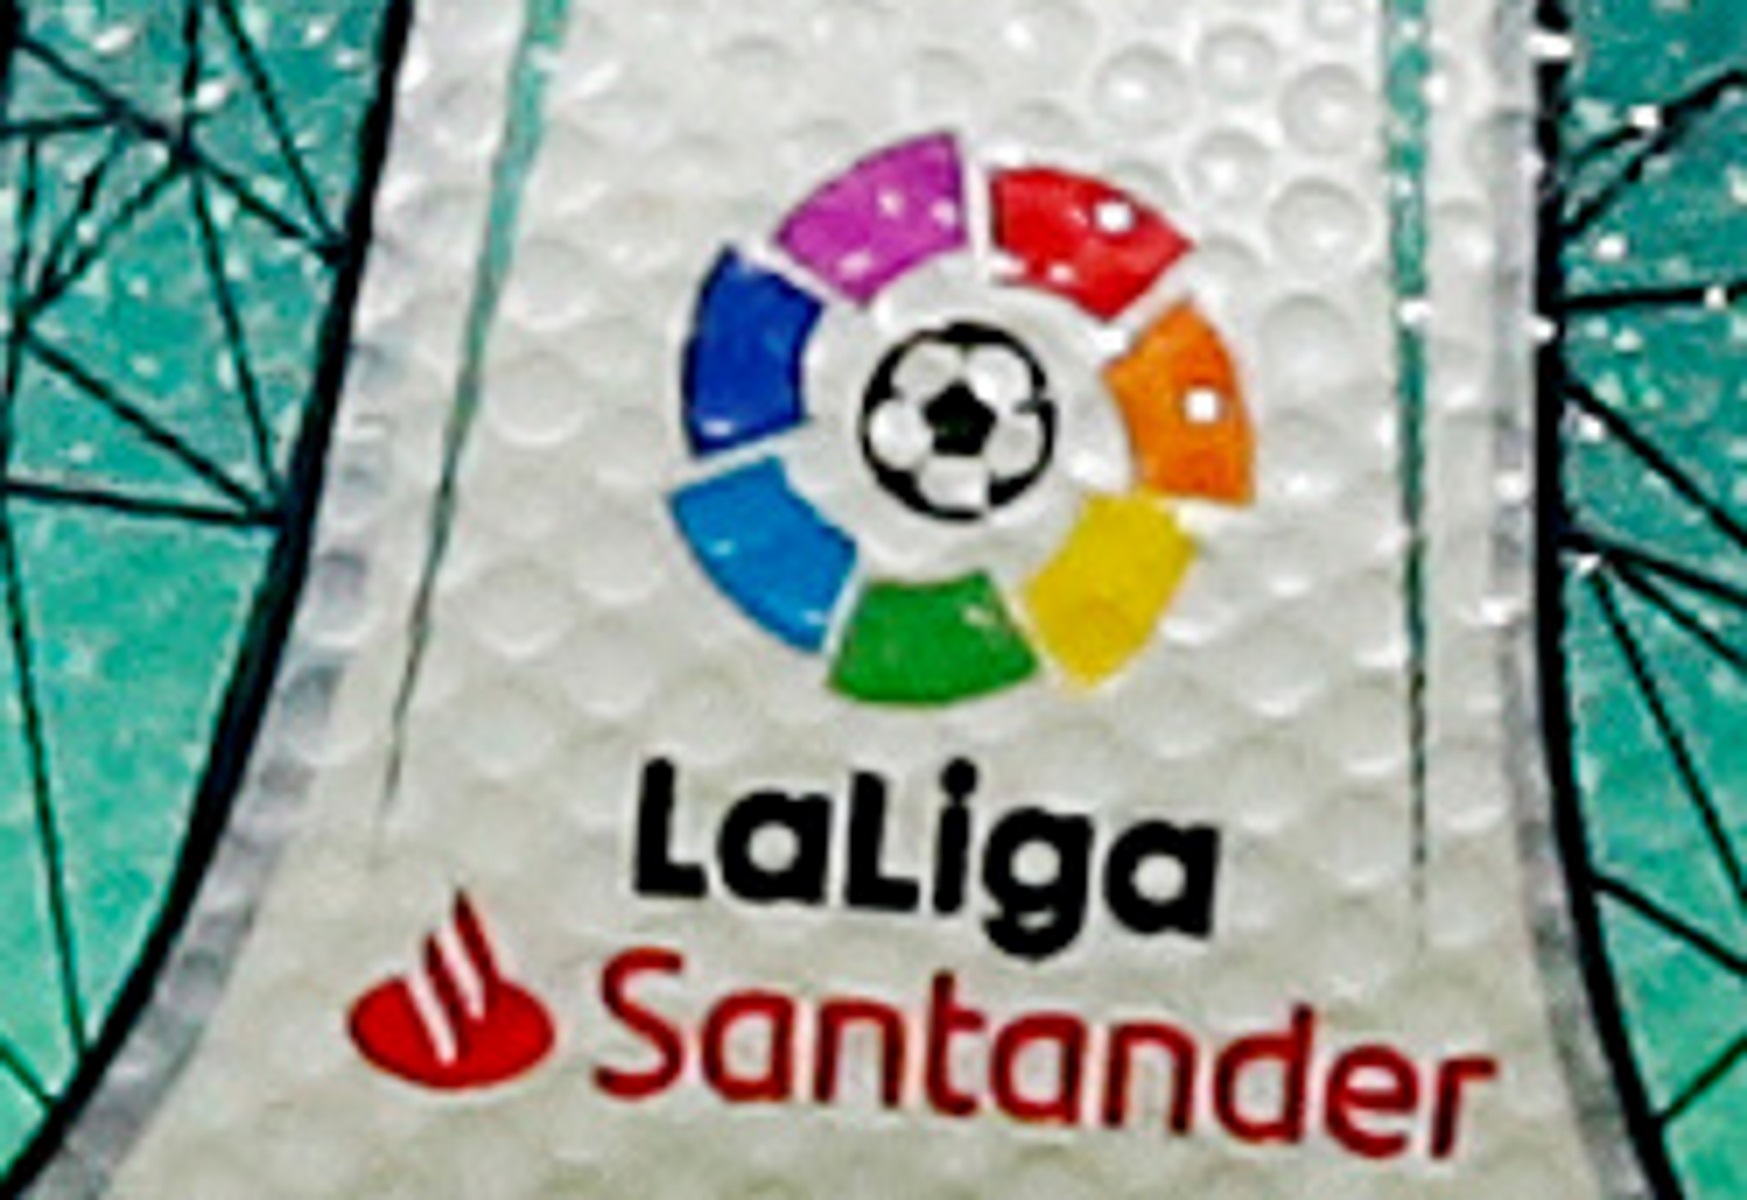 La Liga: Ανακοινώθηκε το αγωνιστικό πρόγραμμα της επανέναρξης